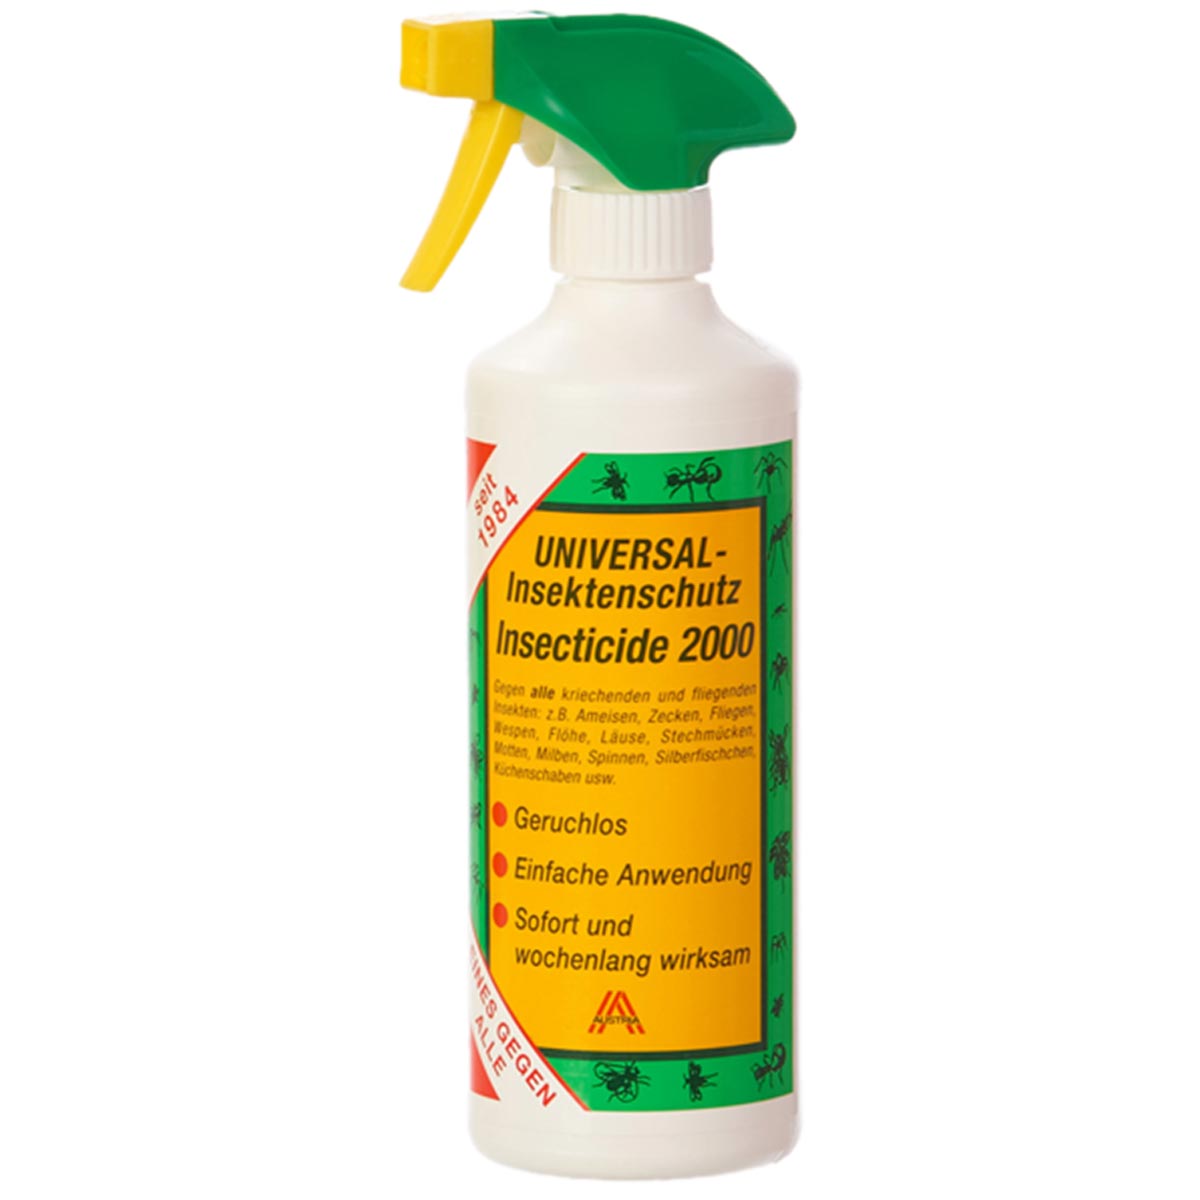 Insecticide 2000 Repellente spray universale contro insetti e parassiti